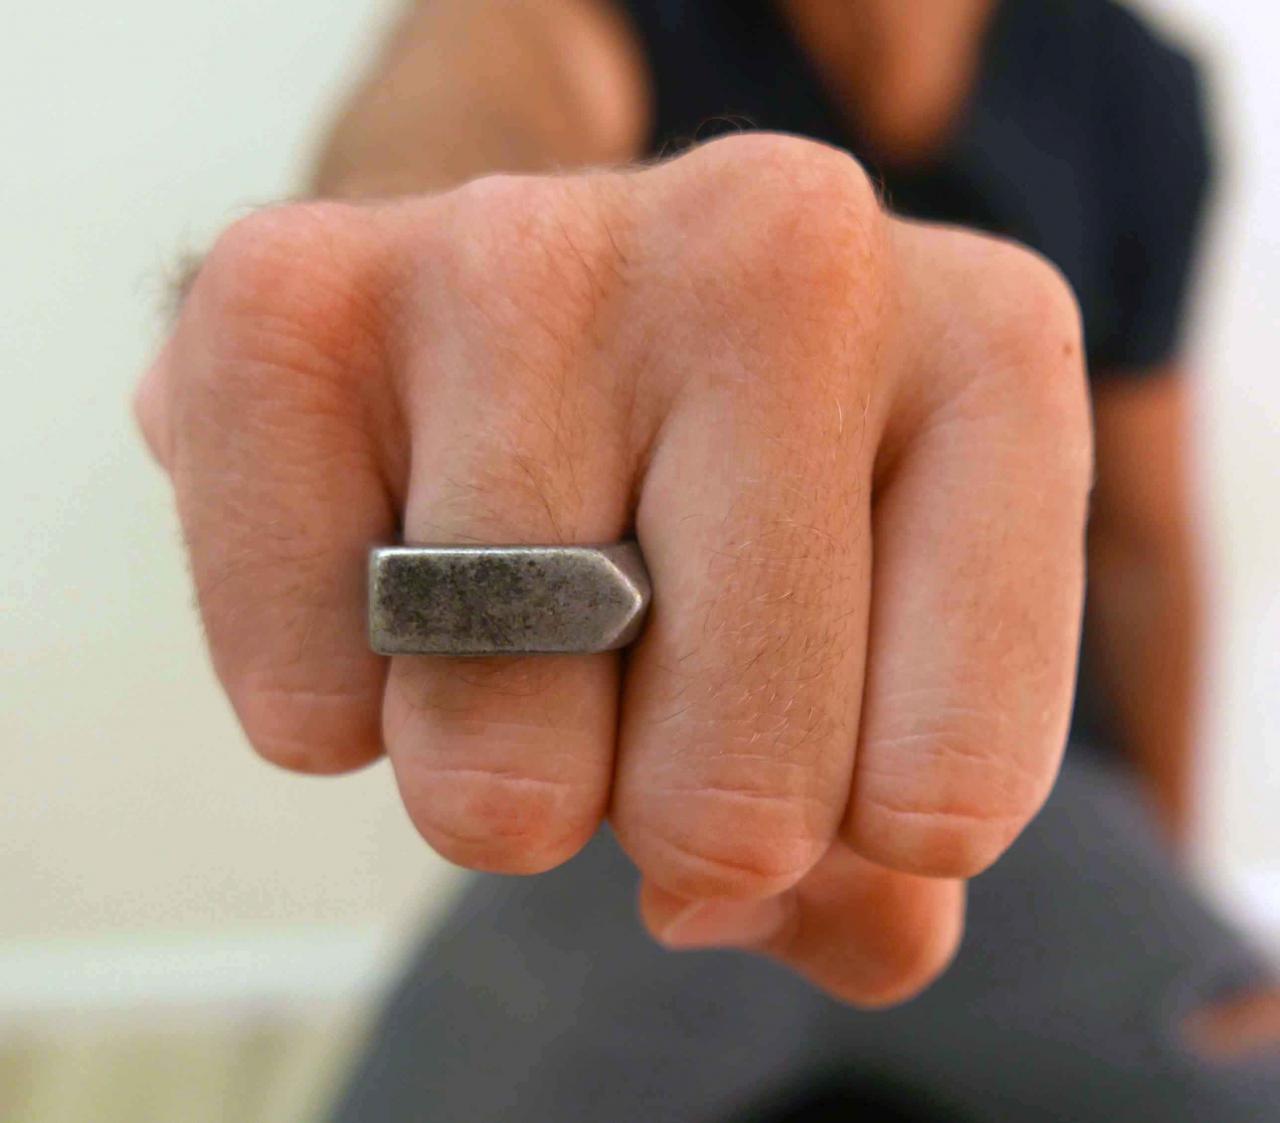 Men's Ring - Men's Silver Ring - Men's Stainless Steel Ring - Men's Silver Band - Men's Jewelry -